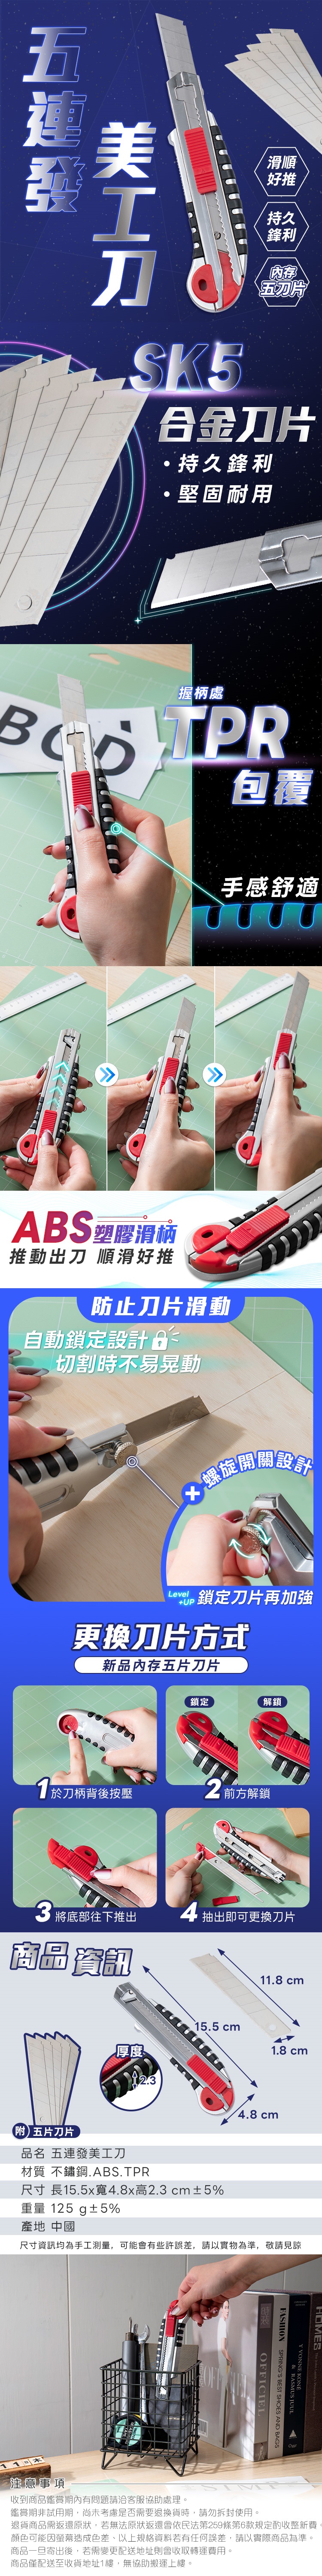 專業重型美工刀(附刀片x5) 辦公用品 美勞用具